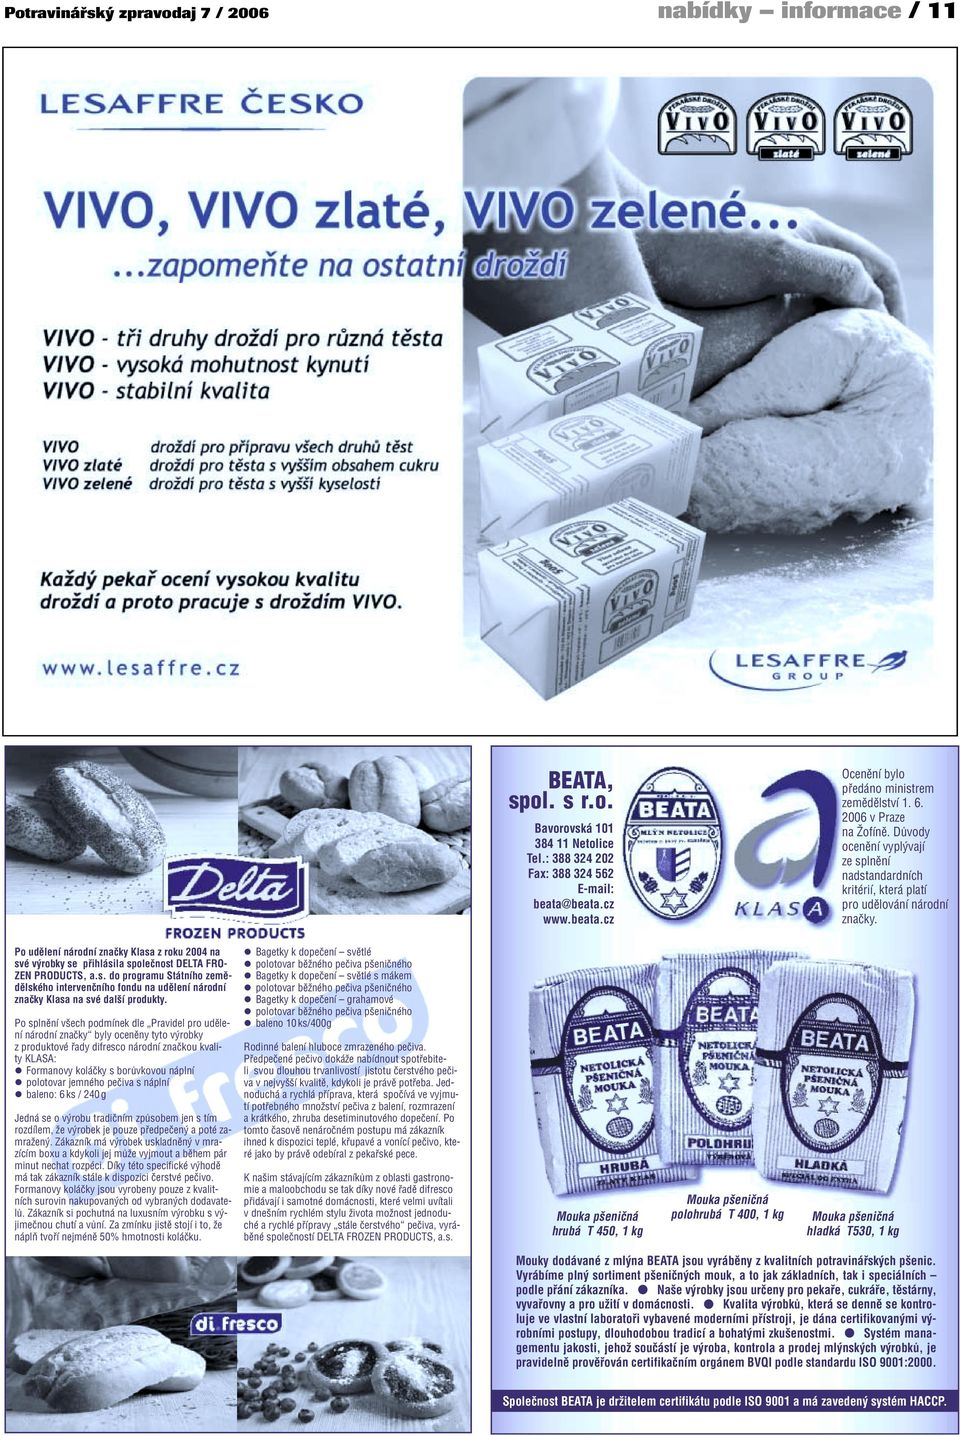 Po udělení národní značky Klasa z roku 2004 na své výrobky se přihlásila společnost DELTA FRO- ZEN PRODUCTS, a.s. do programu Státního zemědělského intervenčního fondu na udělení národní značky Klasa na své další produkty.